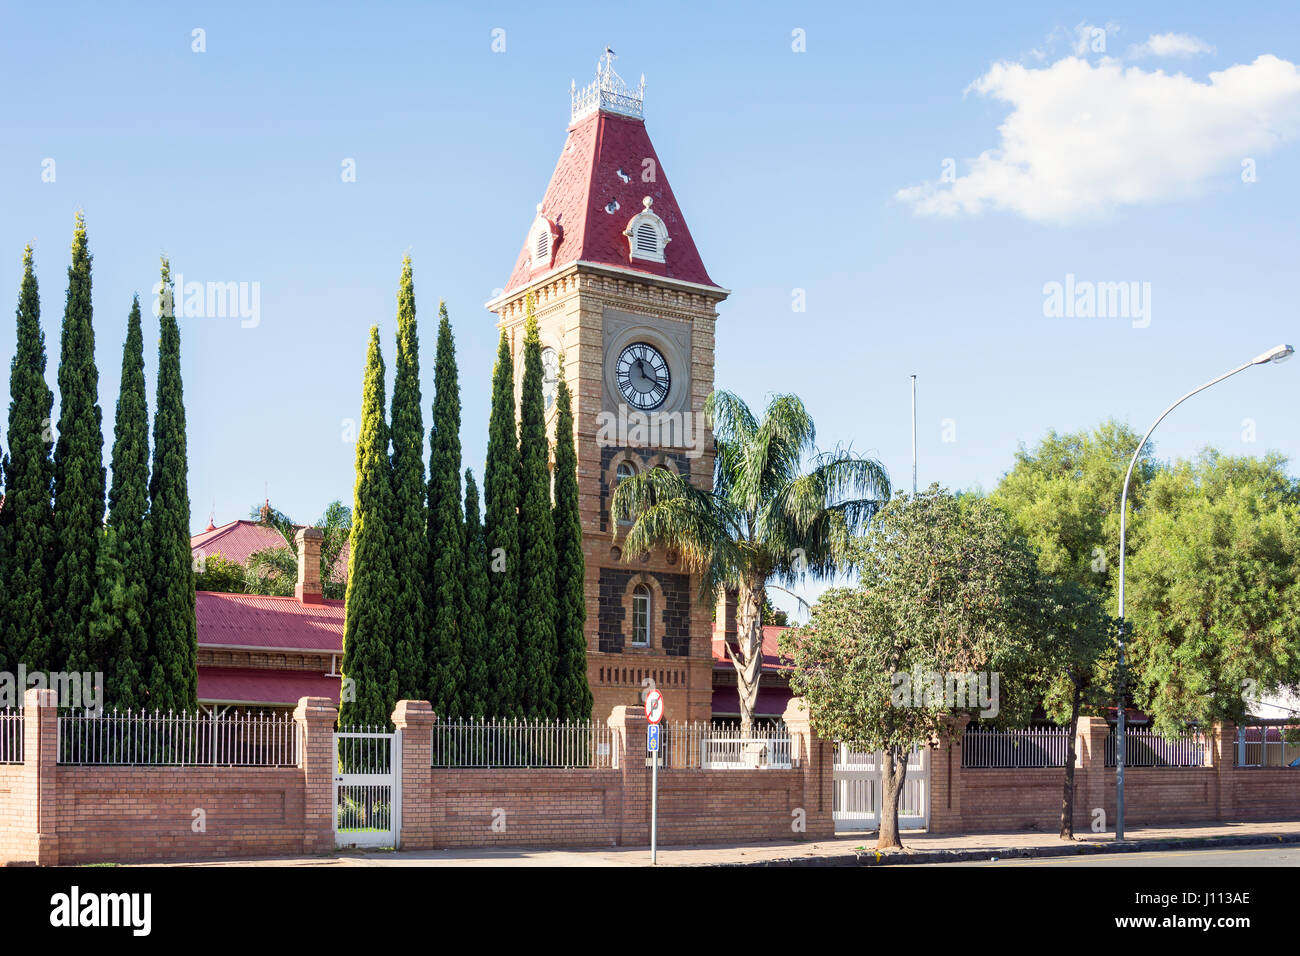 Ancien magistrat Cour, Place du marché, Kimberley, Province du Cap du Nord, République d'Afrique du Sud Banque D'Images